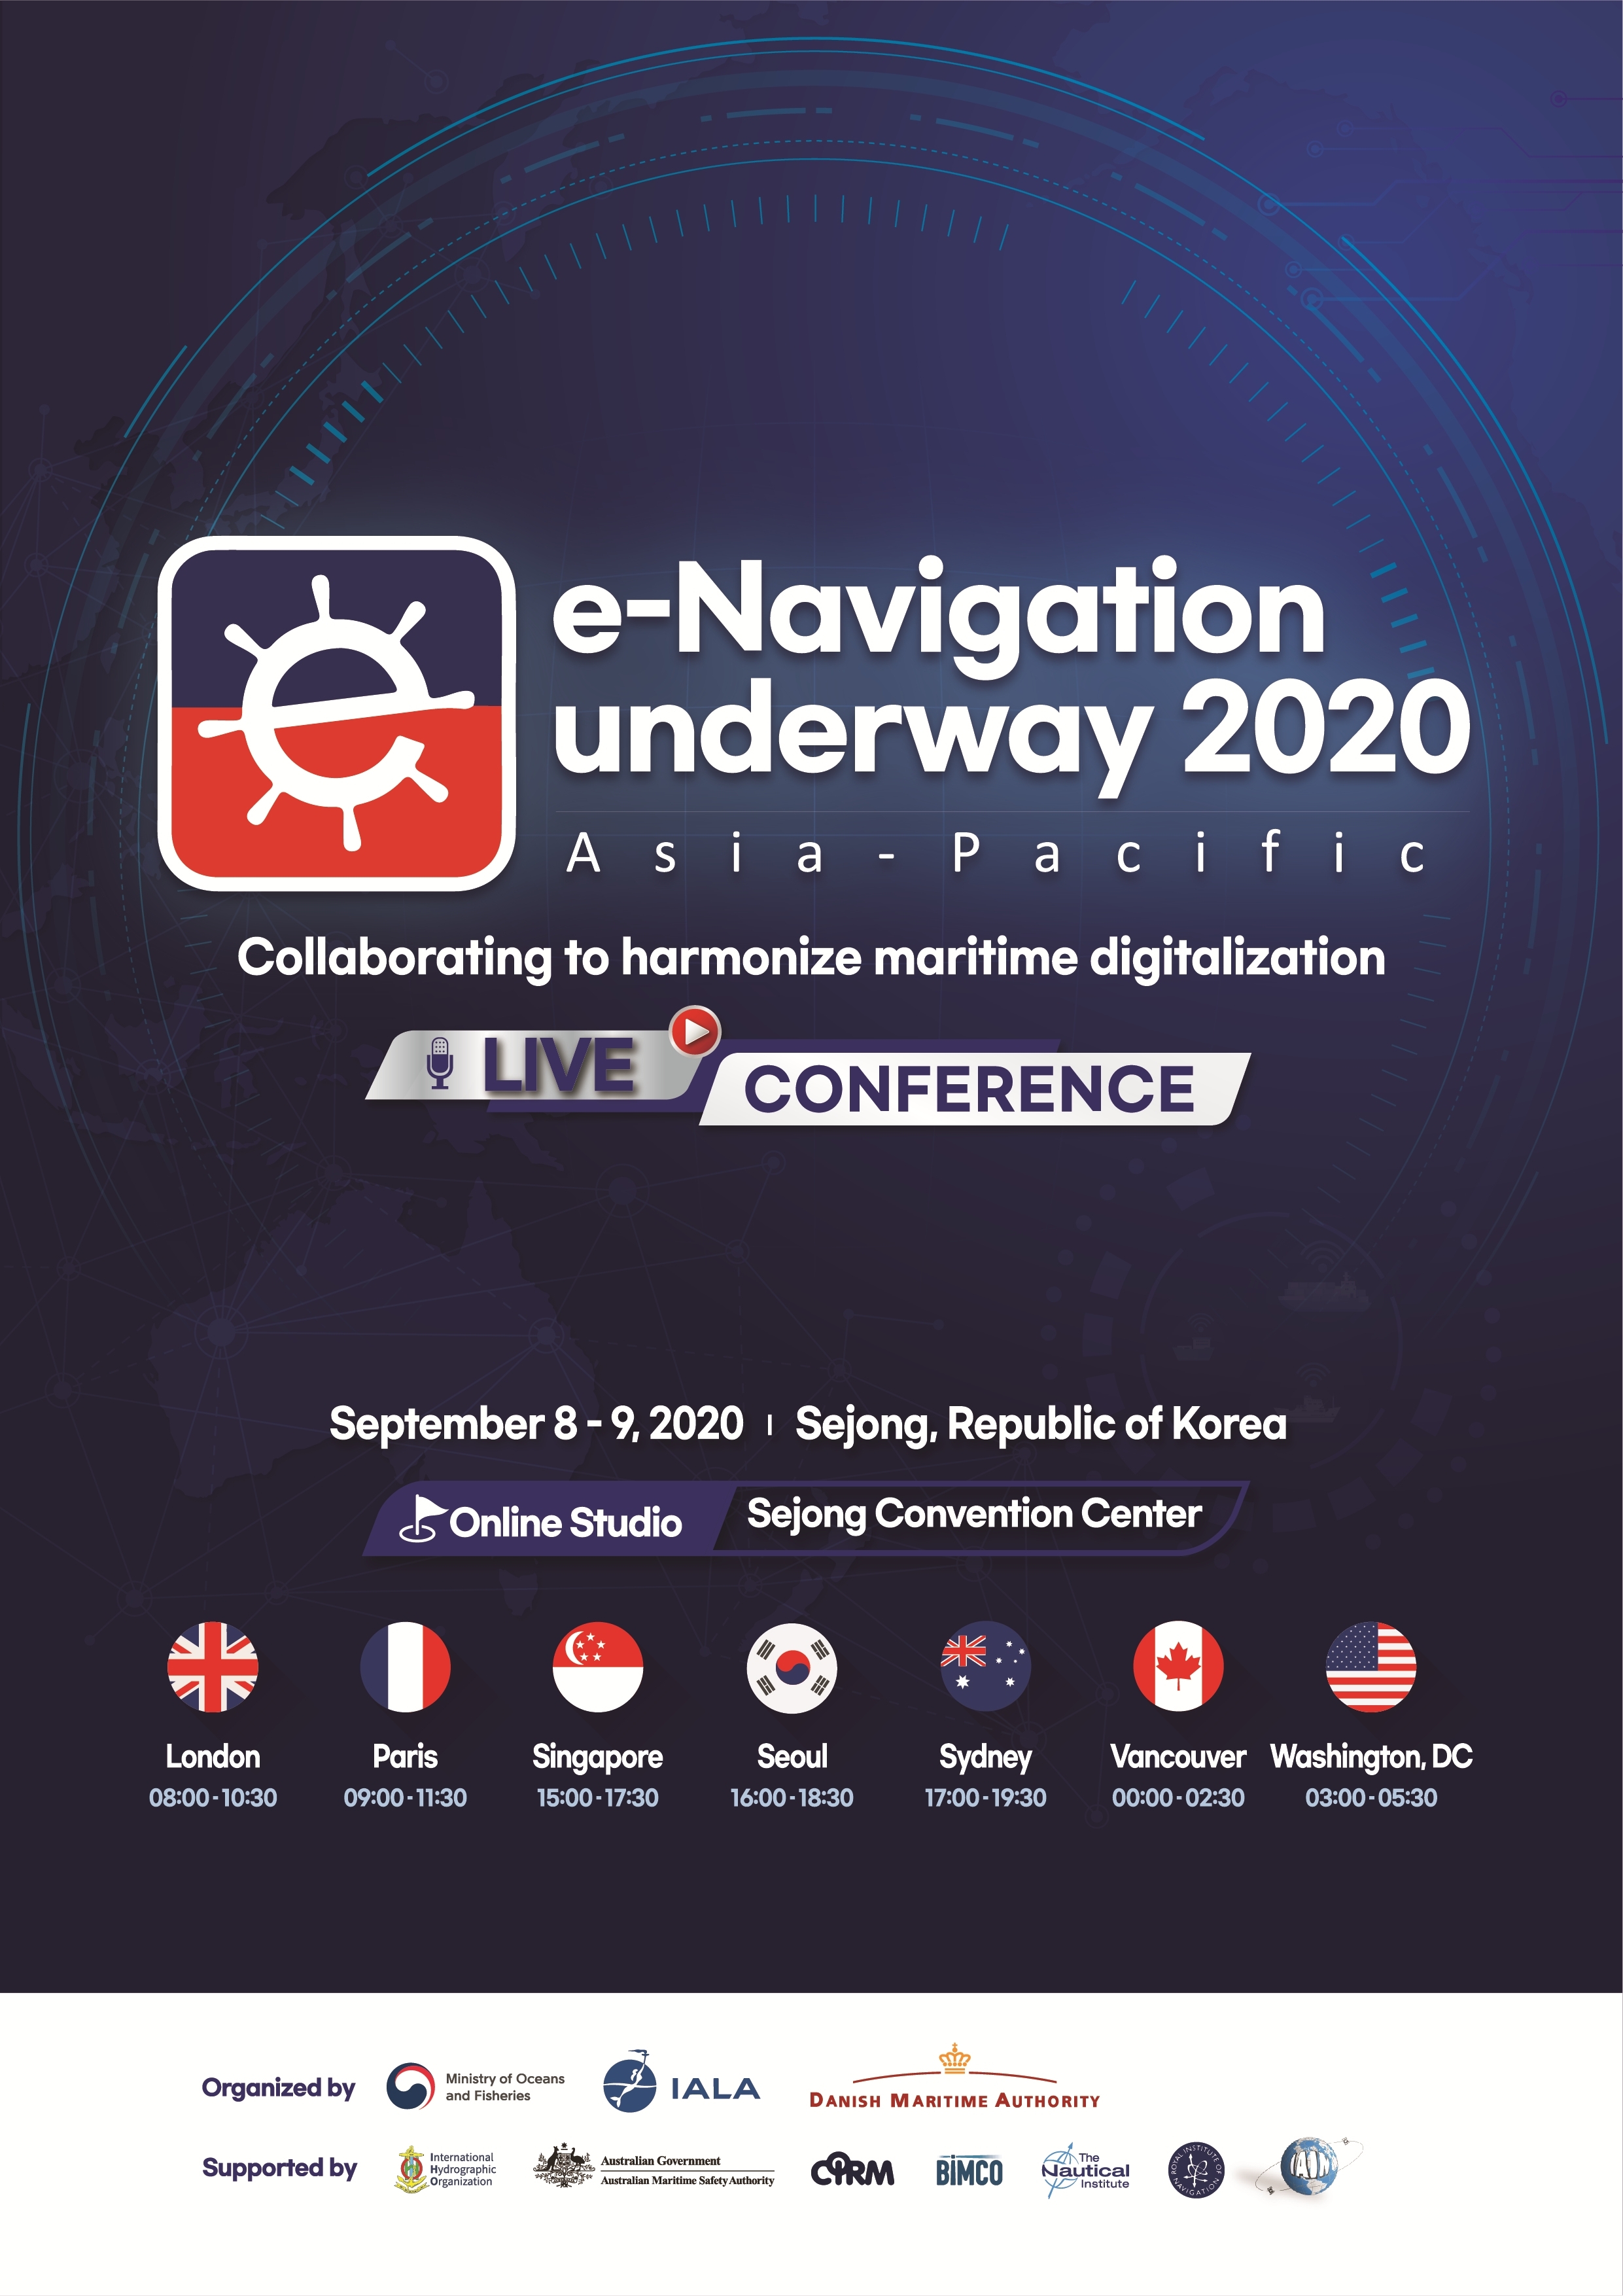 La Republica De Corea Organiza La 4 ª Conferencia De E Navigation Underway De Asia Pacifico Incluida Una Muestra Especial De La Plataforma De Conectividad Maritima Business Wire